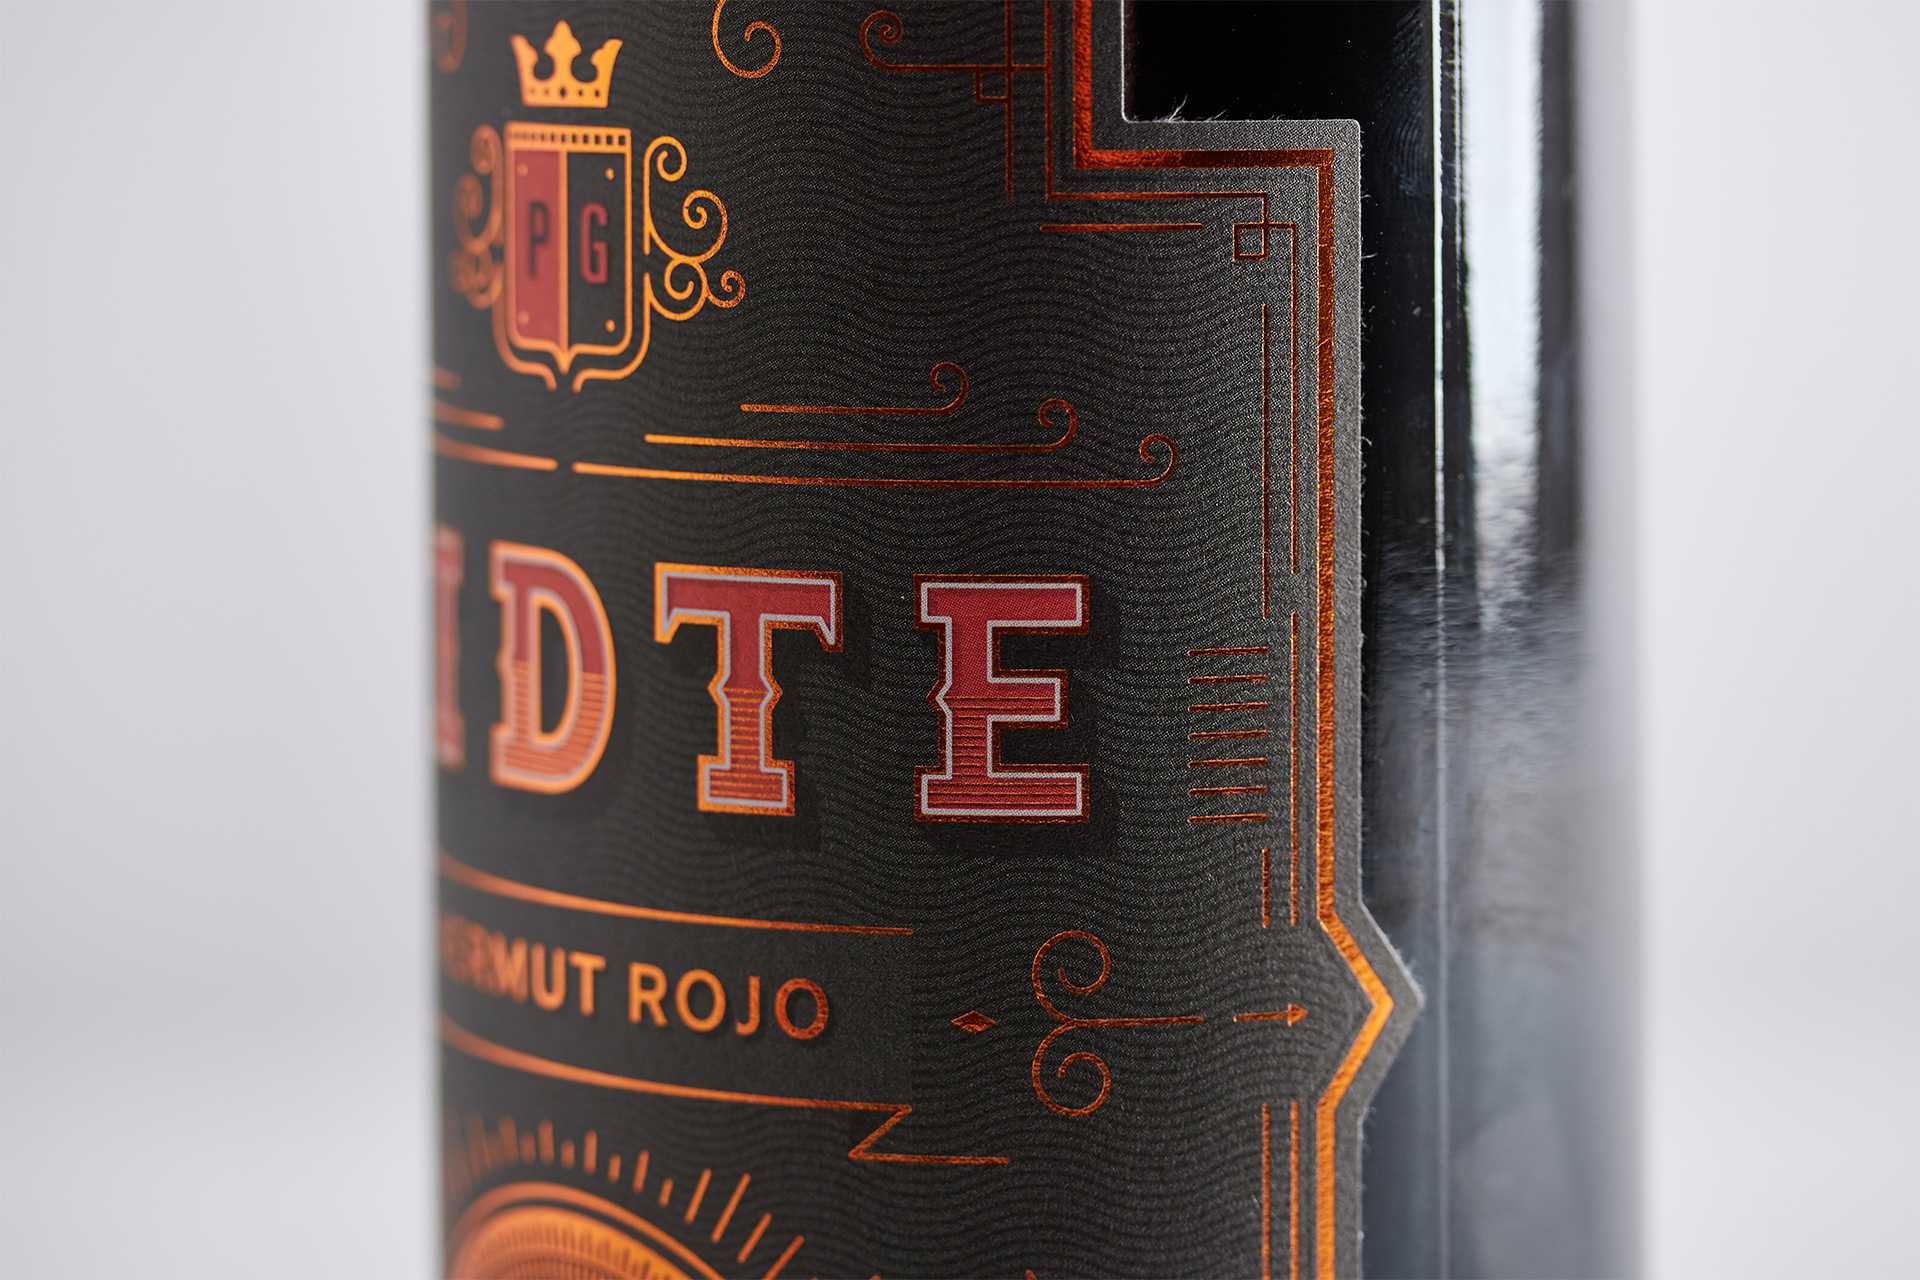 Diseño de etiquetas para familia de vermut (vermouth) rojo y blanco